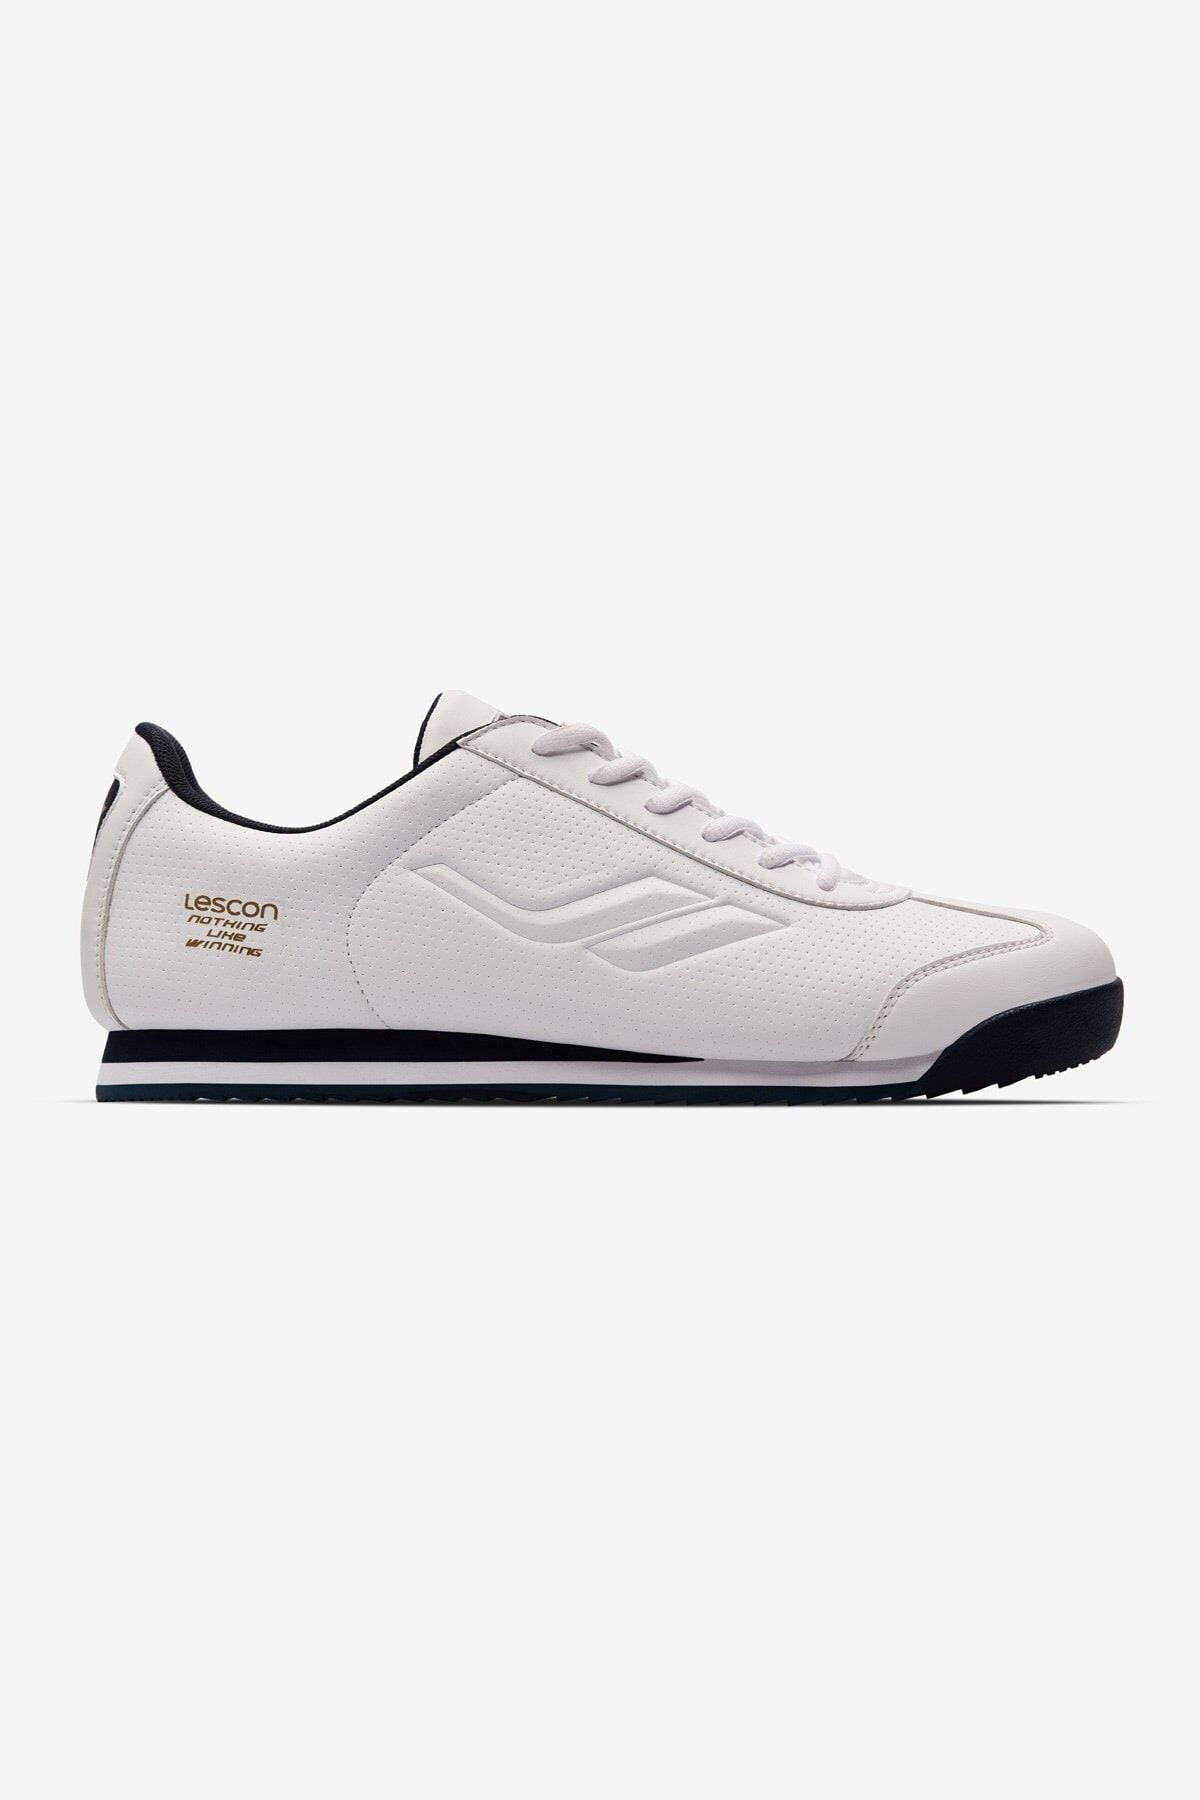 Lescon Wınner-6 Sneakers Beyaz Günlük Spor